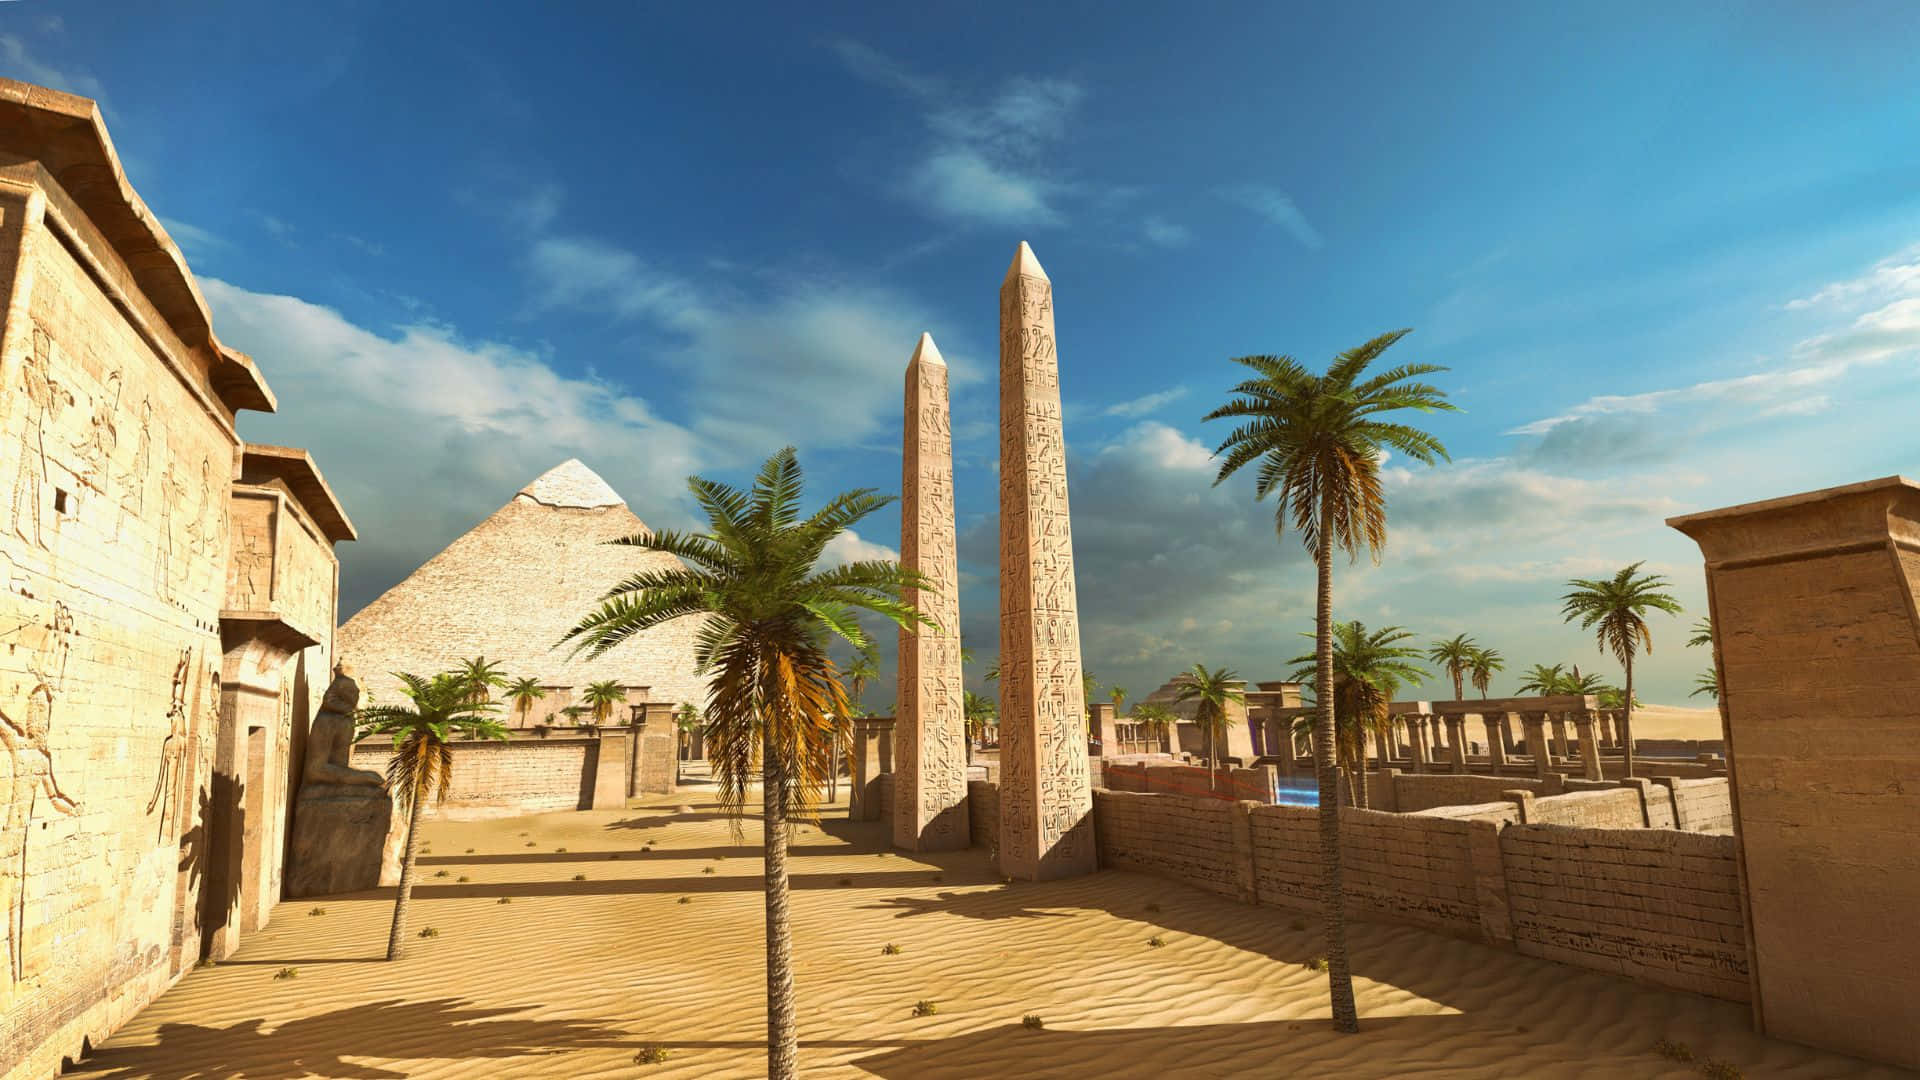 Fondodel Templo Pirámide De El Principio De Talos 1920x1080